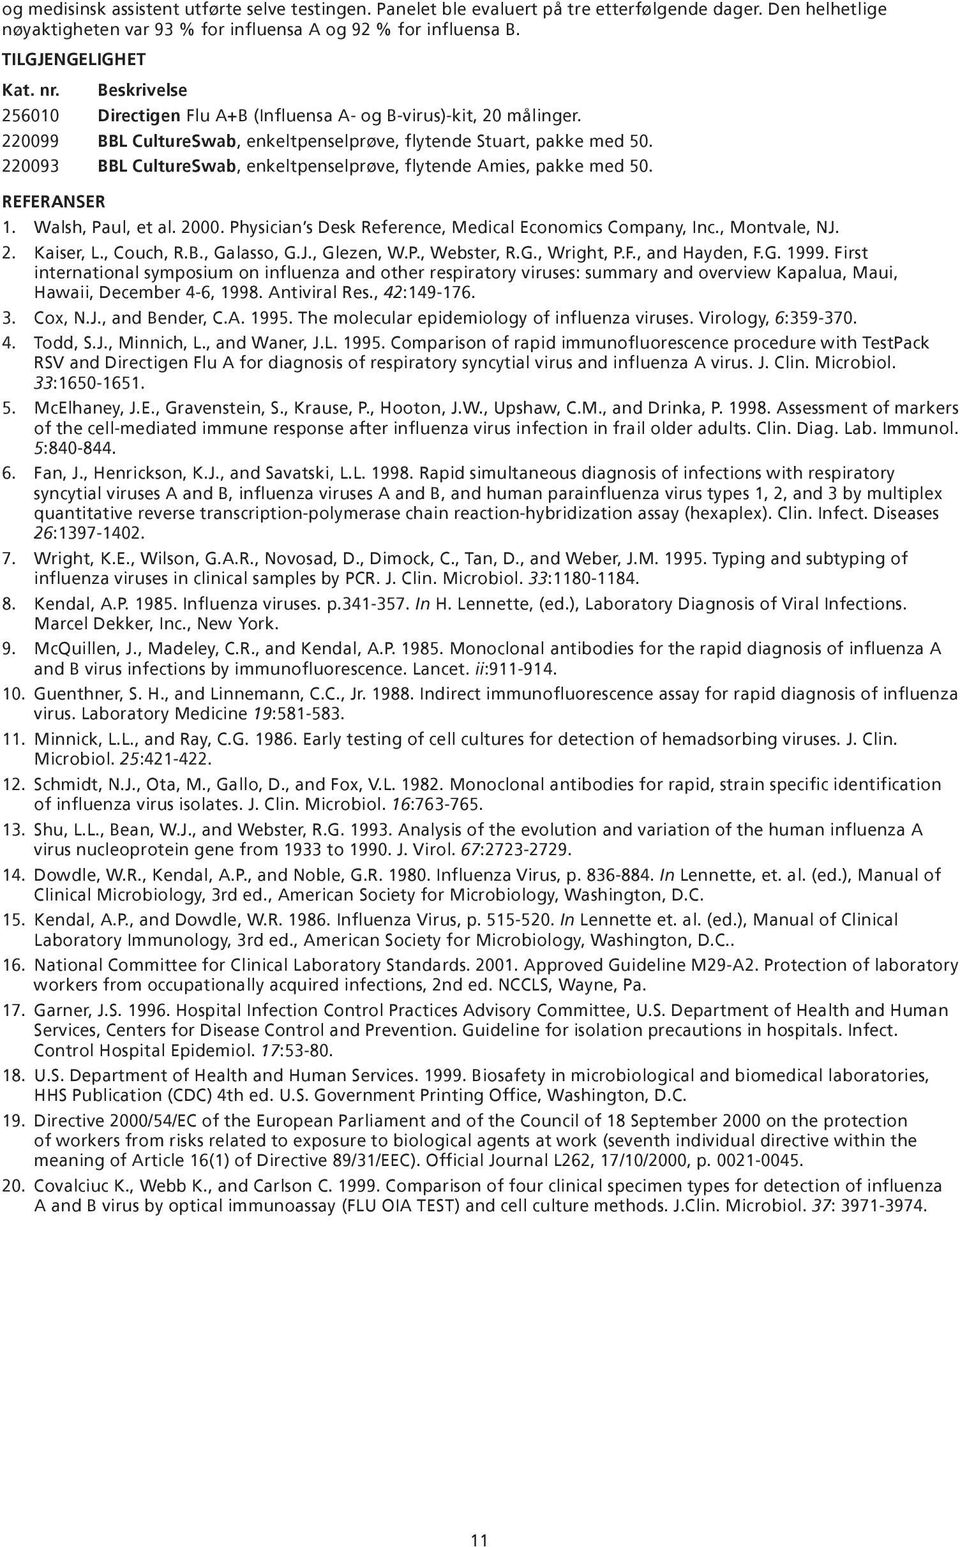 220093 L CultureSwab, enkeltpenselprøve, flytende mies, pakke med 50. REFERNSER 1. Walsh, Paul, et al. 2000. Physician s Desk Reference, Medical Economics Company, Inc., Montvale, NJ. 2. Kaiser, L.